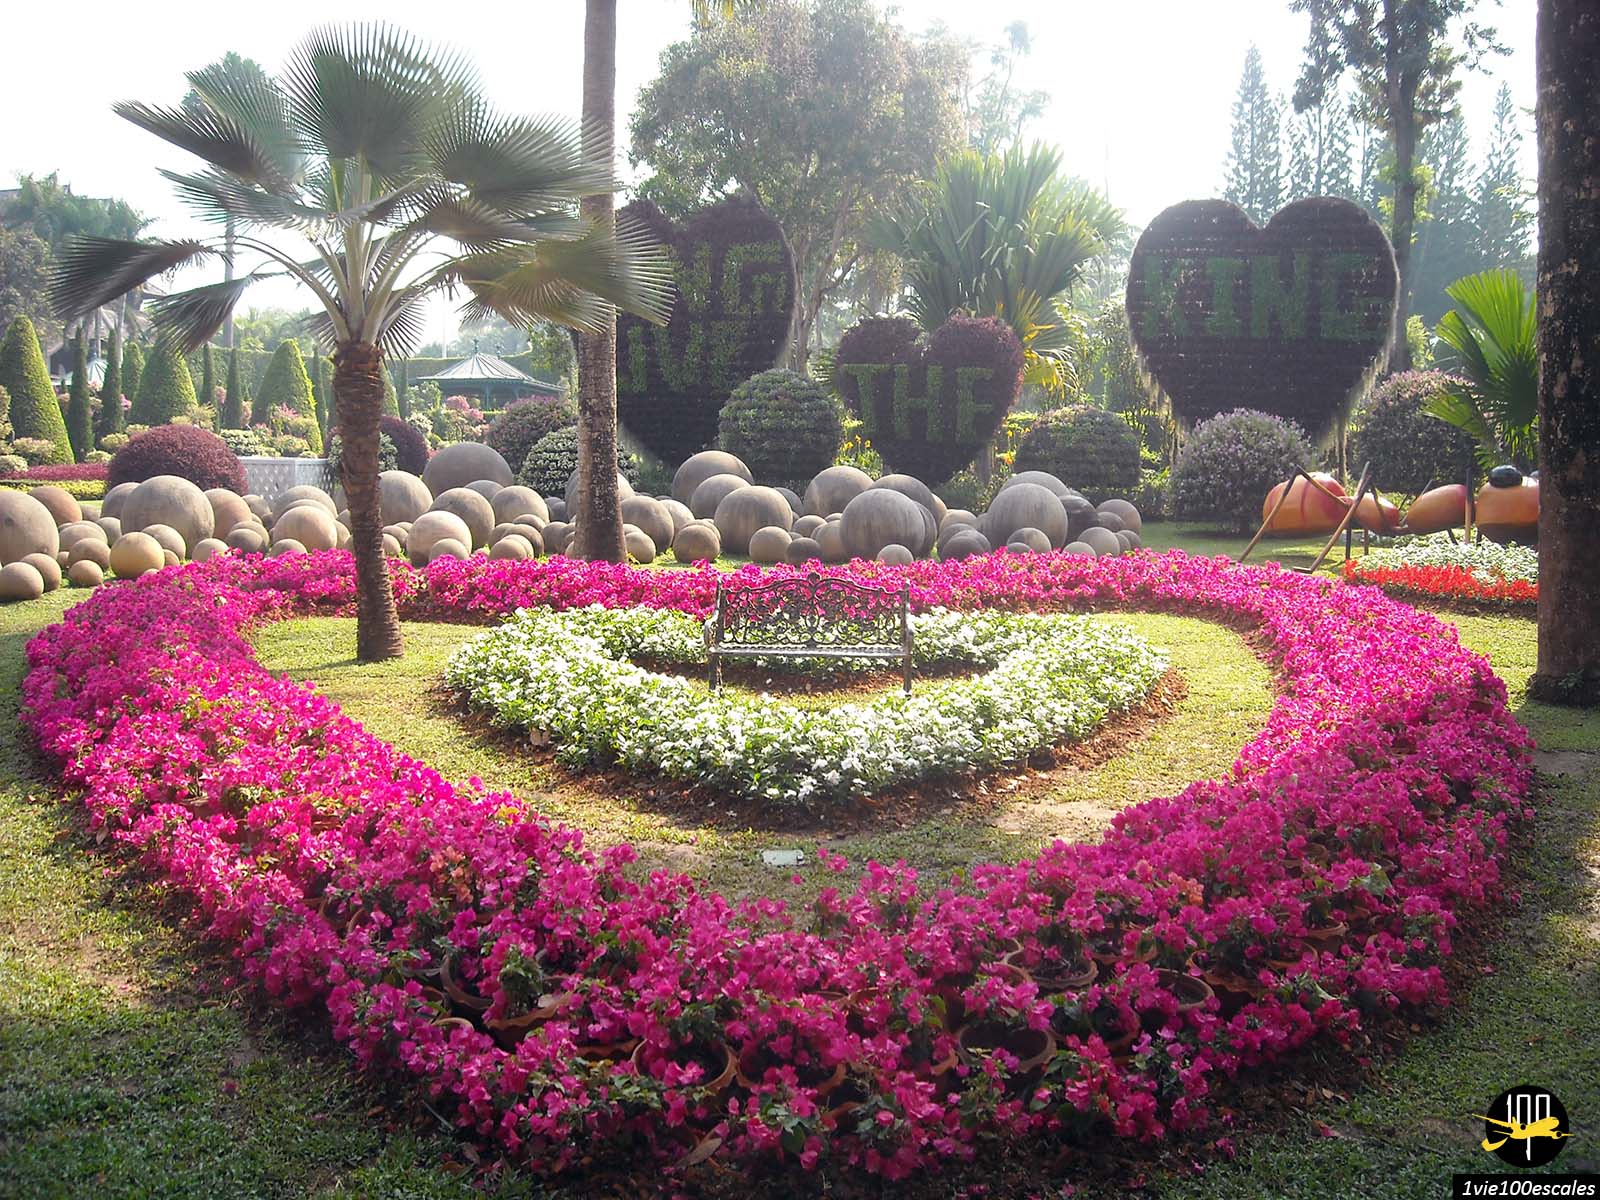 Le jardin tropical de Nong Nooch est situé sur une superficie de 2,4 kilomètres carrés et est un jardin botanique magnifiquement aménagé